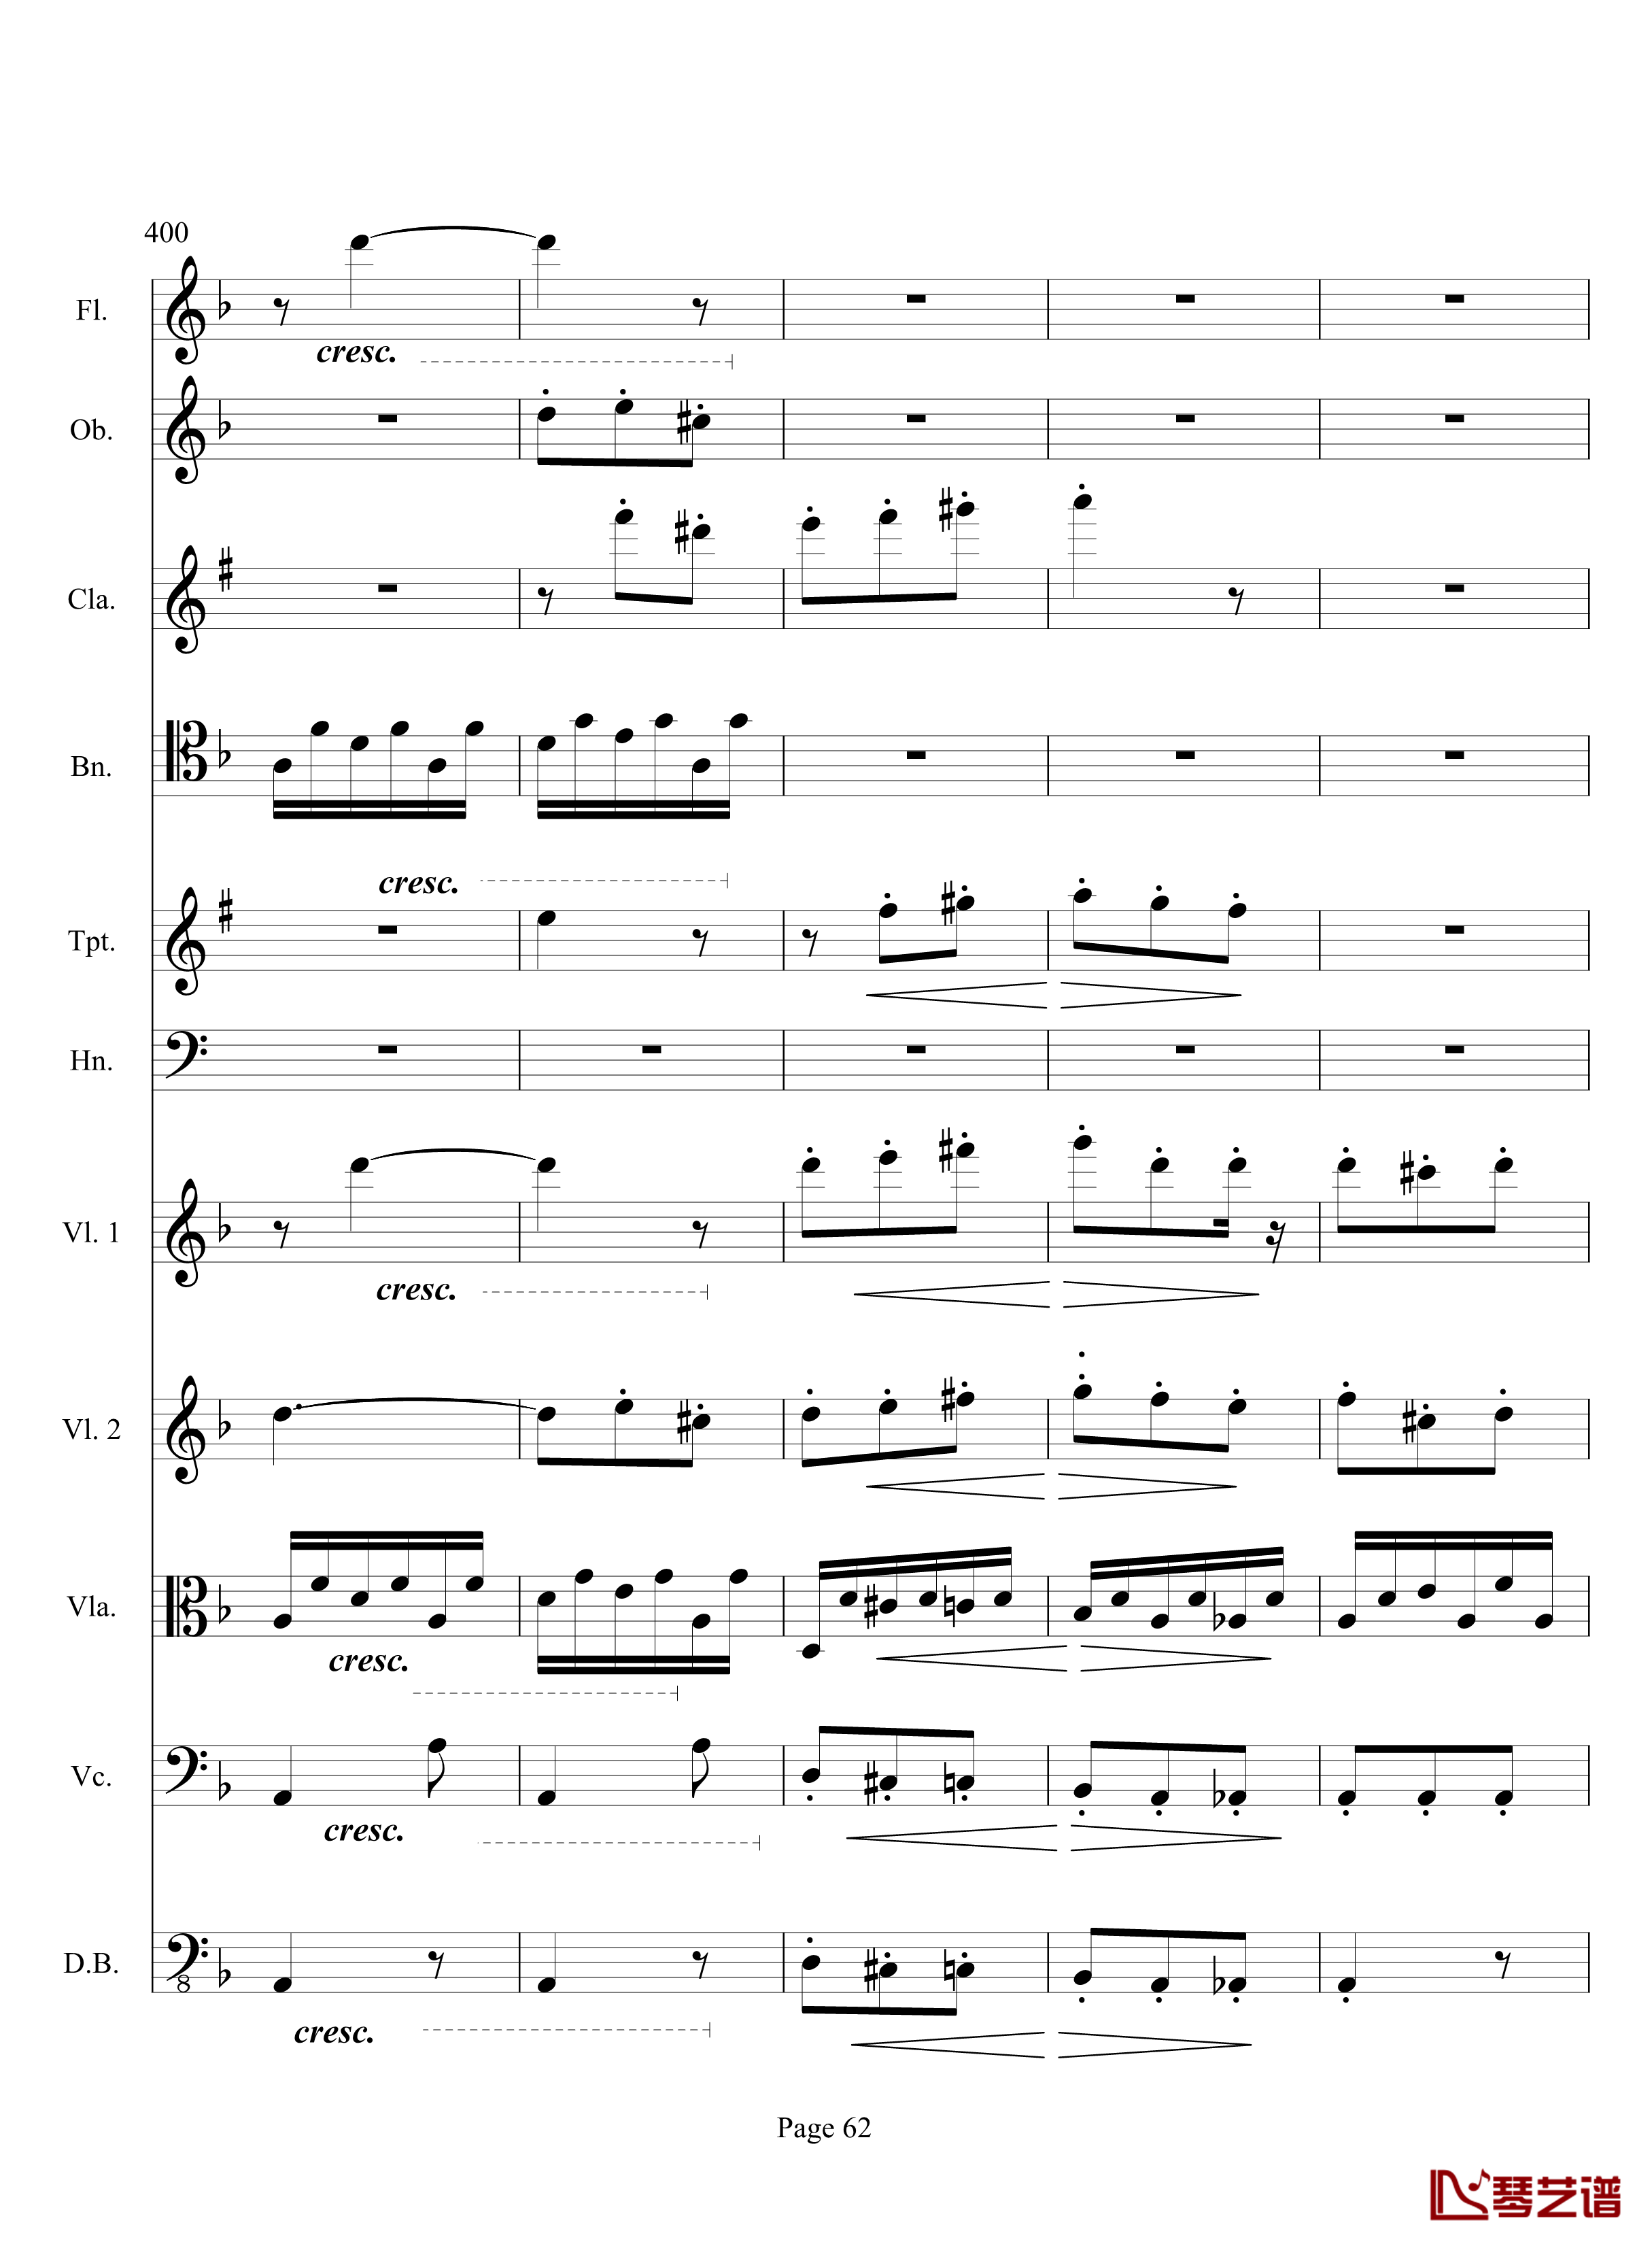 奏鸣曲之交响钢琴谱-第17首-Ⅲ-贝多芬-beethoven62